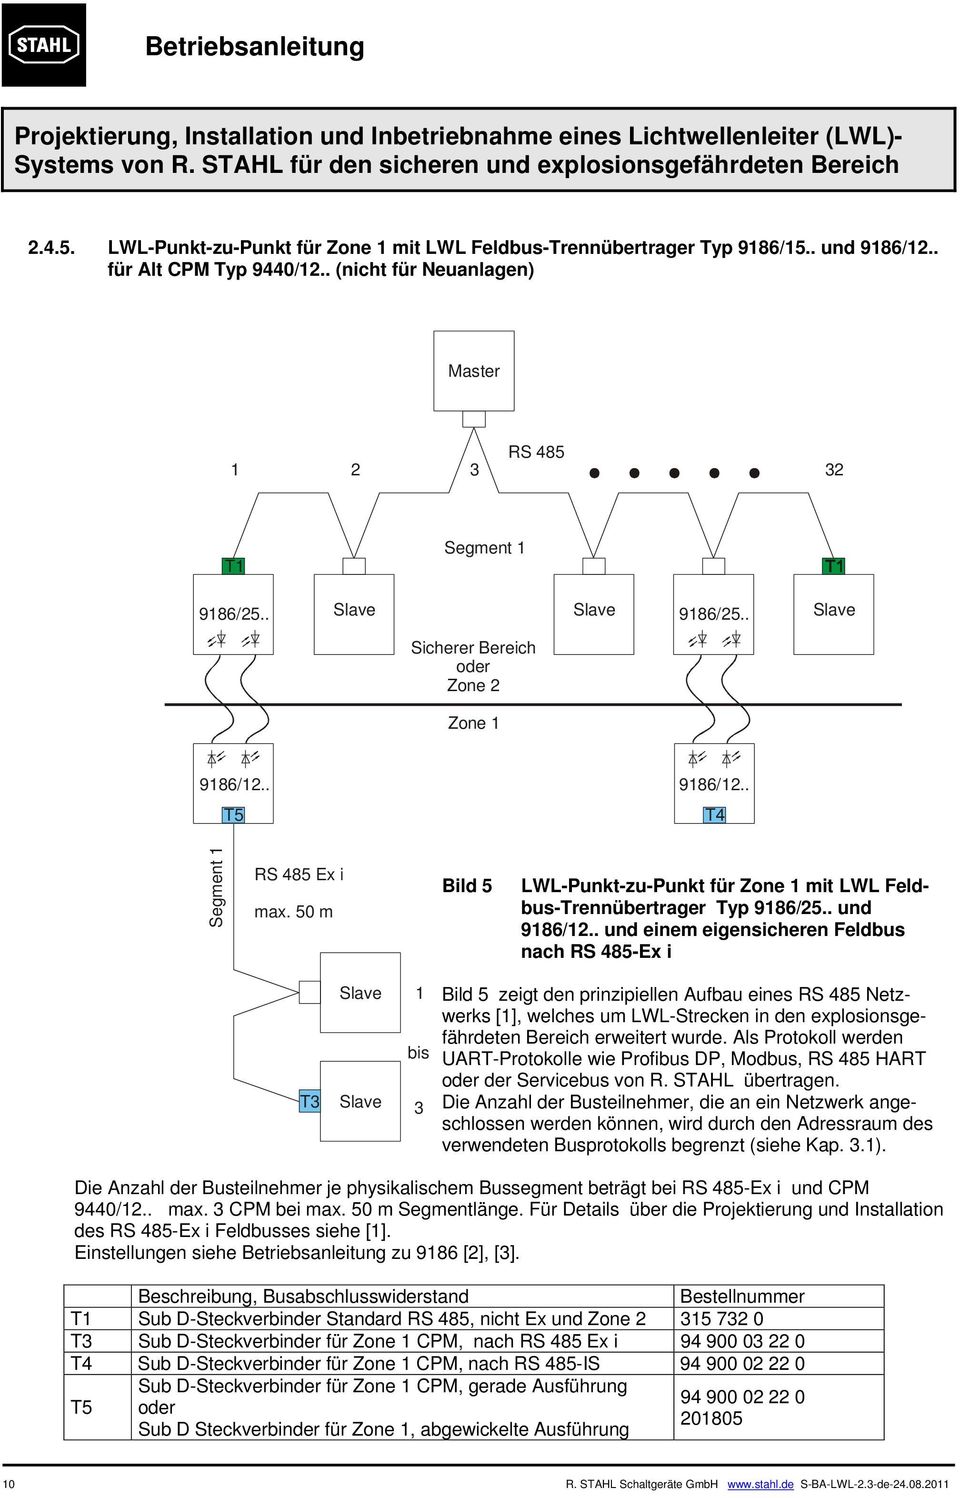 . und und einem eigensicheren Feldbus nach RS 485-Ex i T3 1 bis 3 Bild 5 zeigt den prinzipiellen Aufbau eines RS 485 Netzwerks [1], welches um LWL-Strecken in den explosionsgefährdeten Bereich